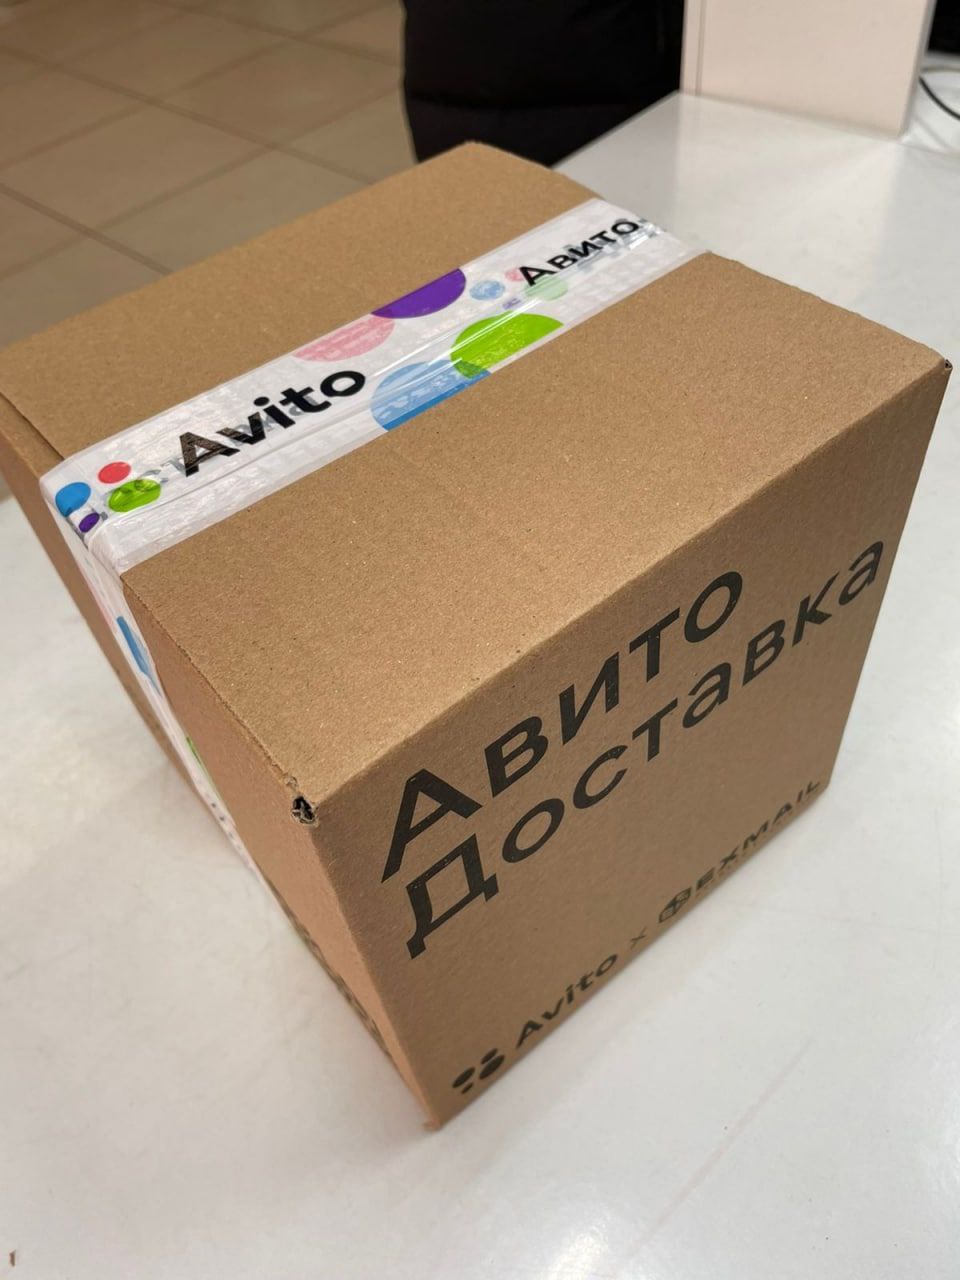 Продавцы на Авито сами выберут способ доставки в рамках безопасной сделки